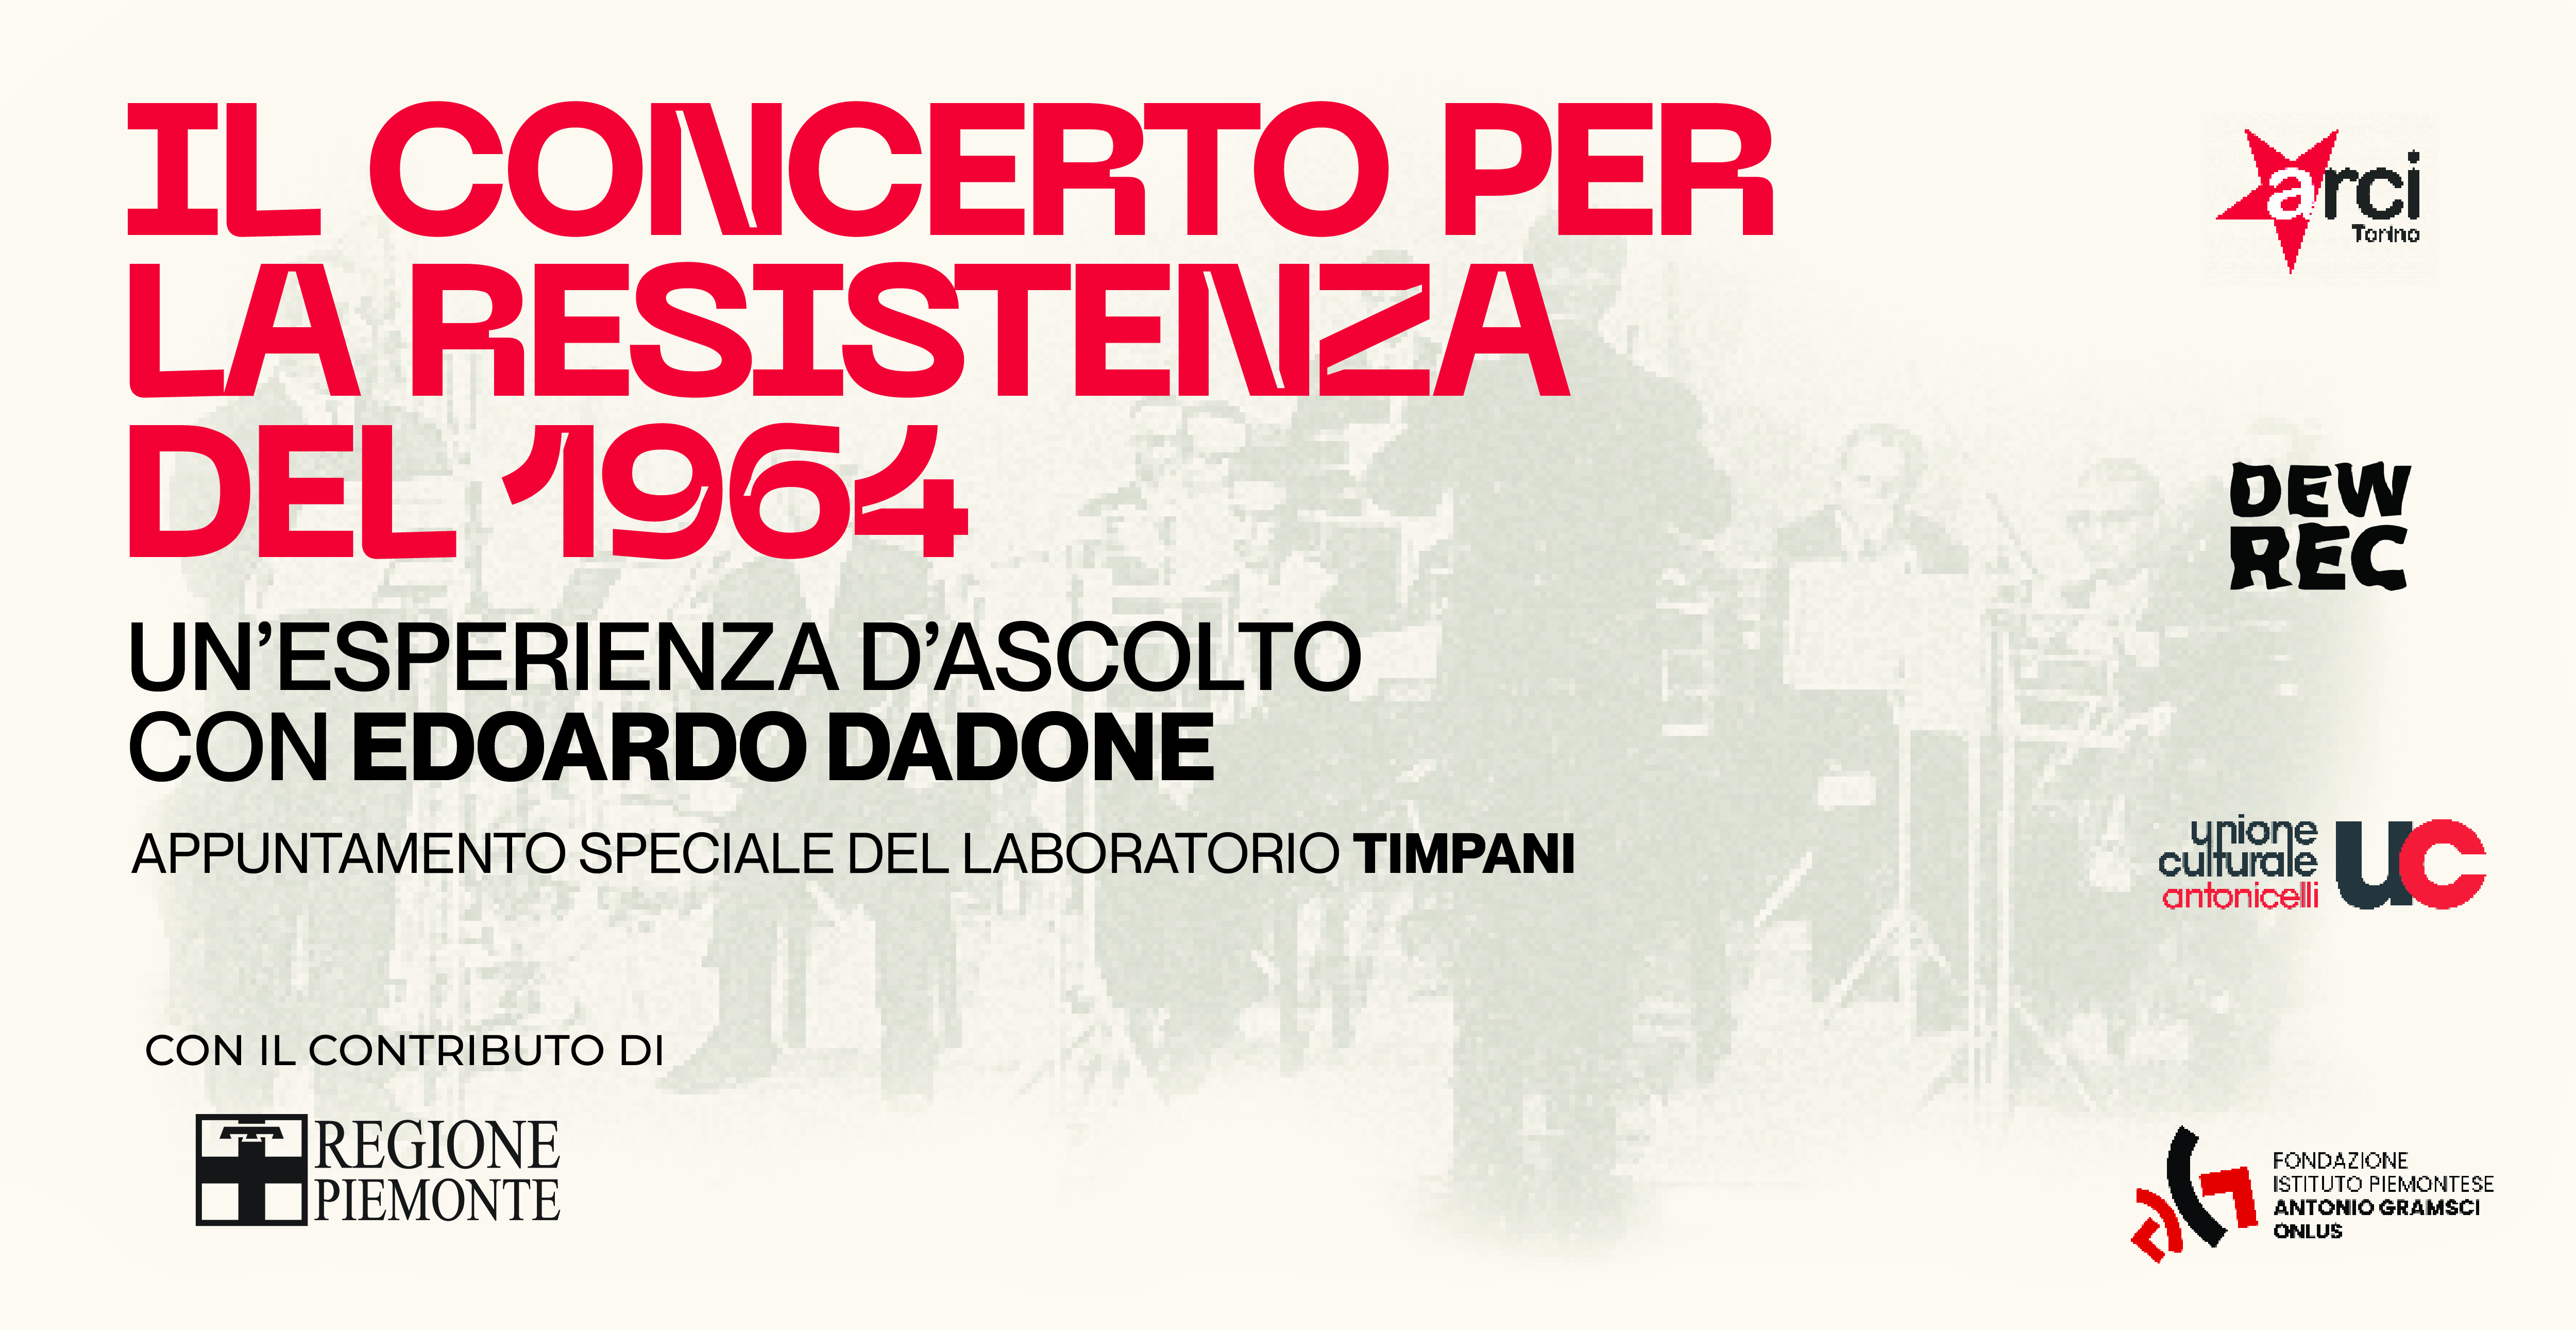 Il Concerto per la Resistenza del 1964